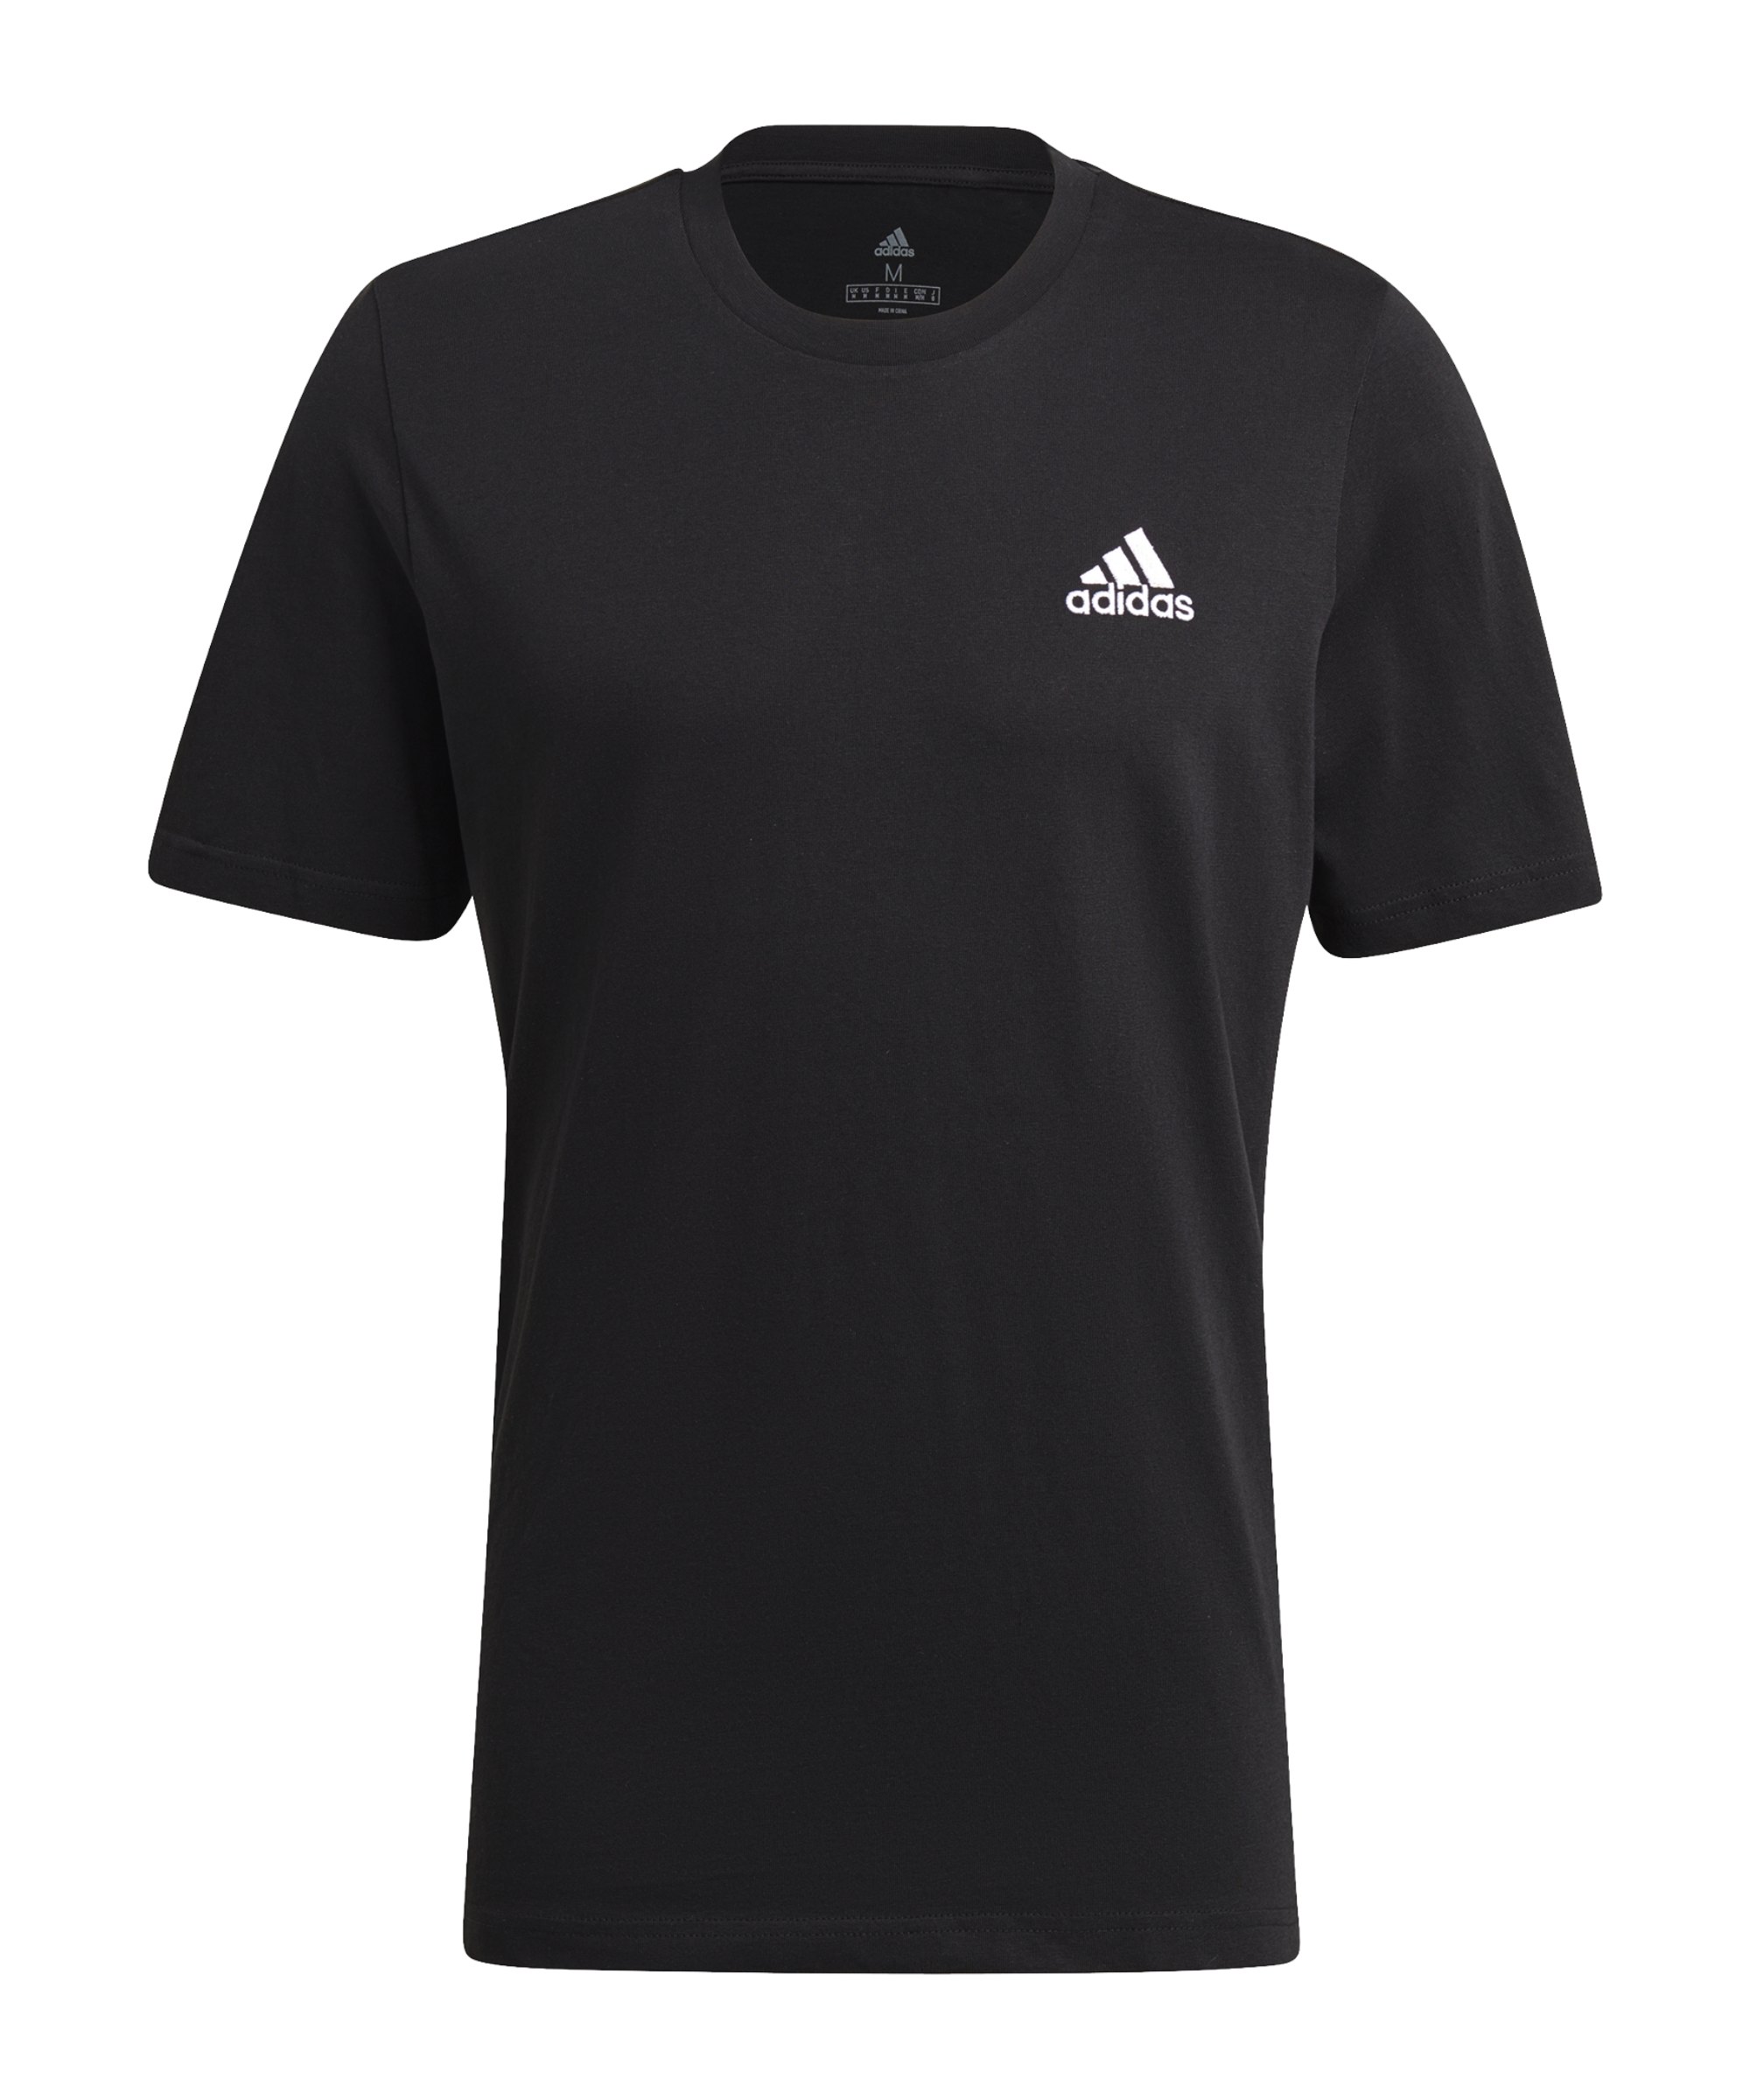 adidas Essentials T-Shirt Schwarz - schwarz